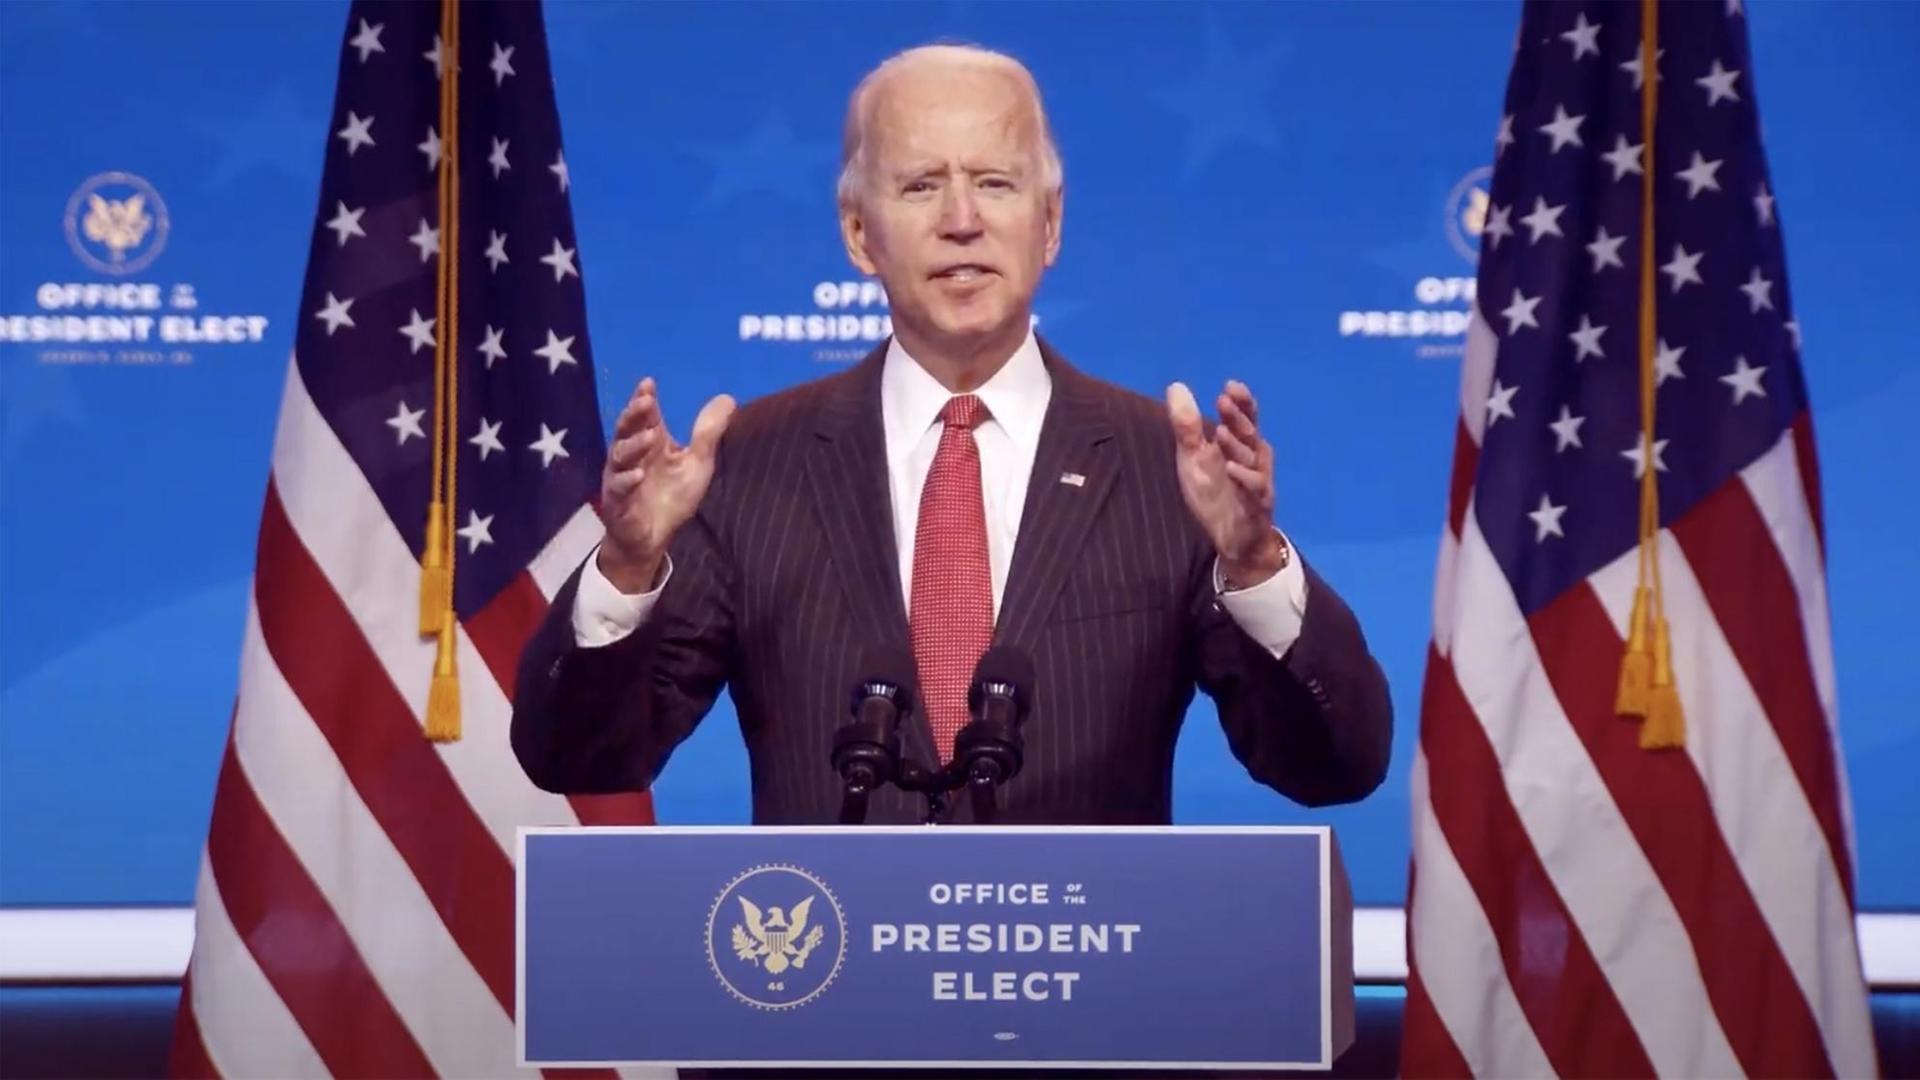 Der gewählte neue Präsident der USA - Joe Biden